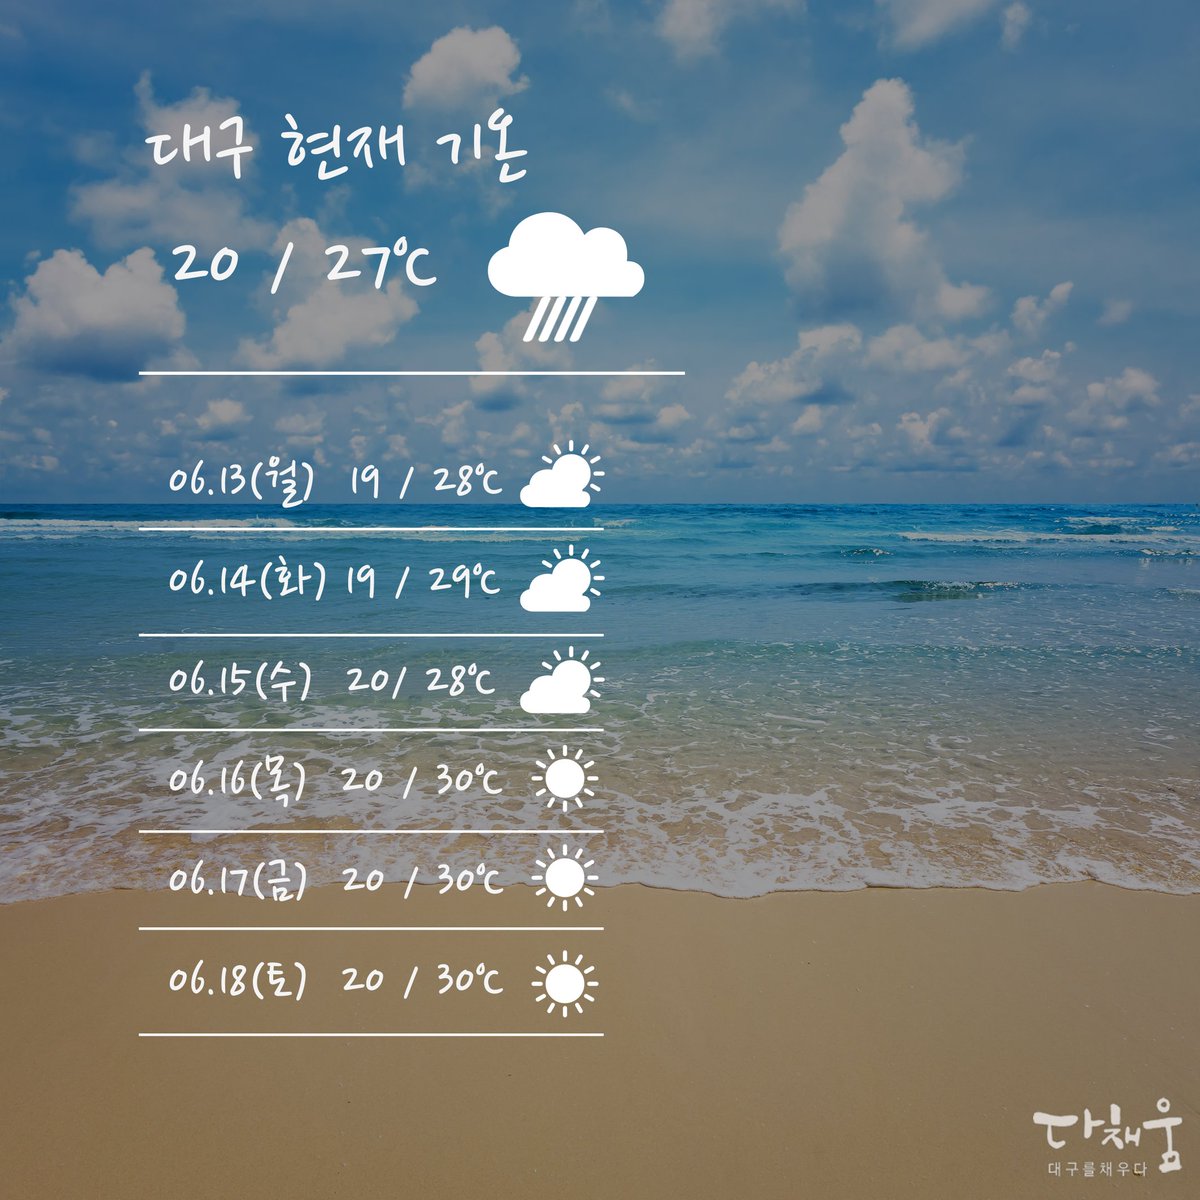 대구 날씨 비가 더워서 오빠 미세먼지보통 실검에 3시에 더운데 서울 좋아요 비오면 기온 colorfuldg